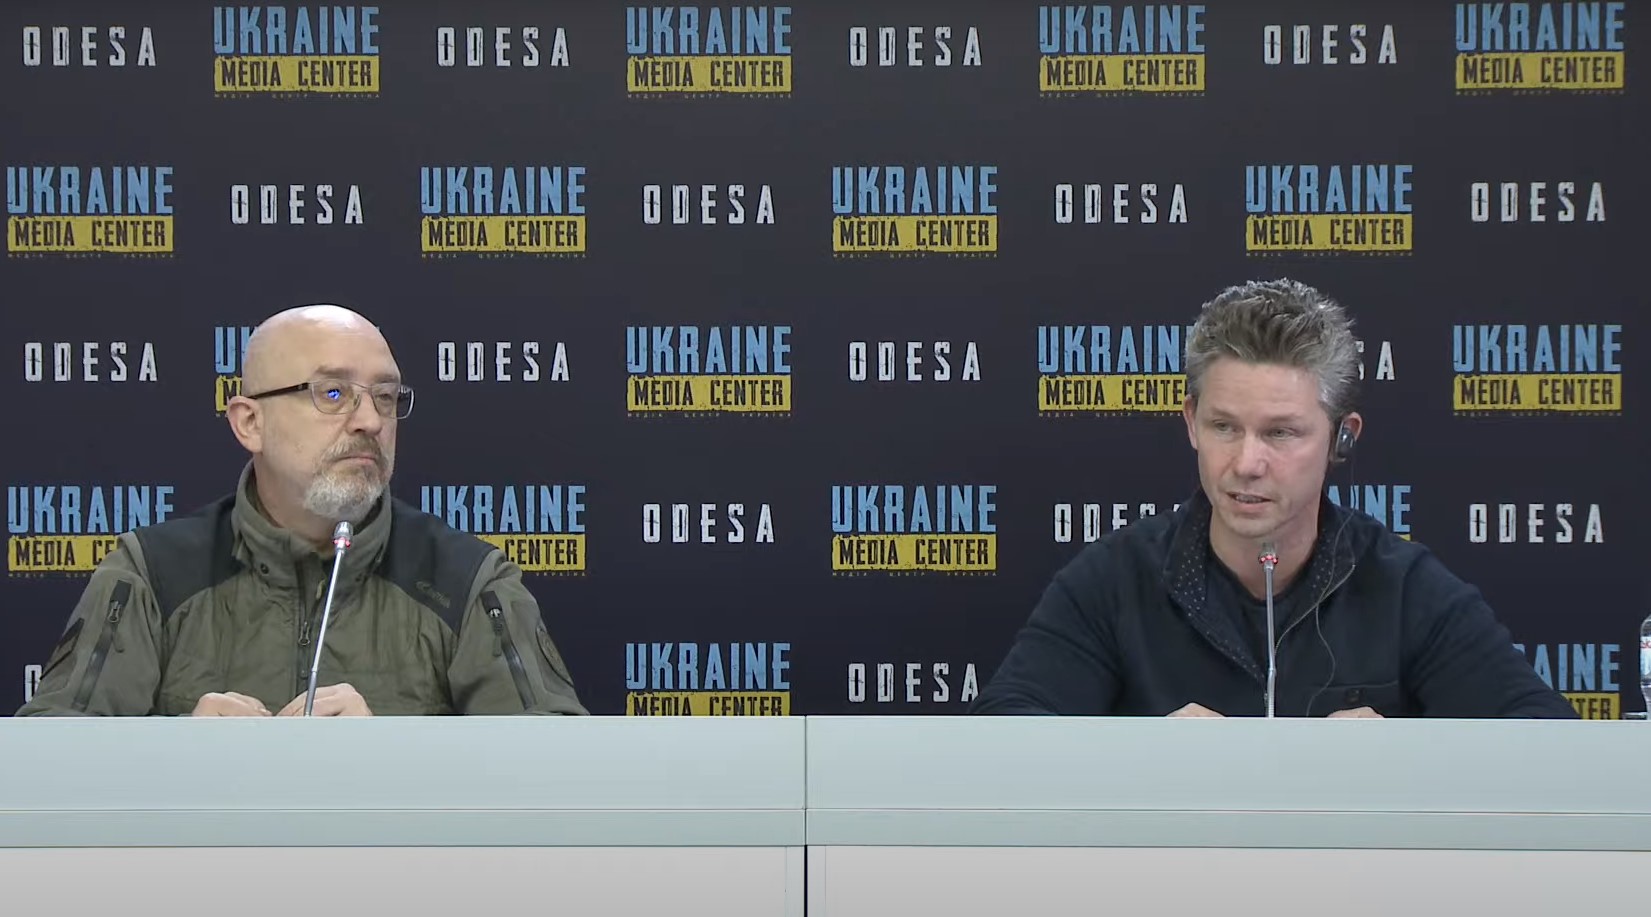 Олексій Резніков та Пол Йонсон в Україні. Грудень 2022. Кадр з відео Ukraine Media Center Odesa